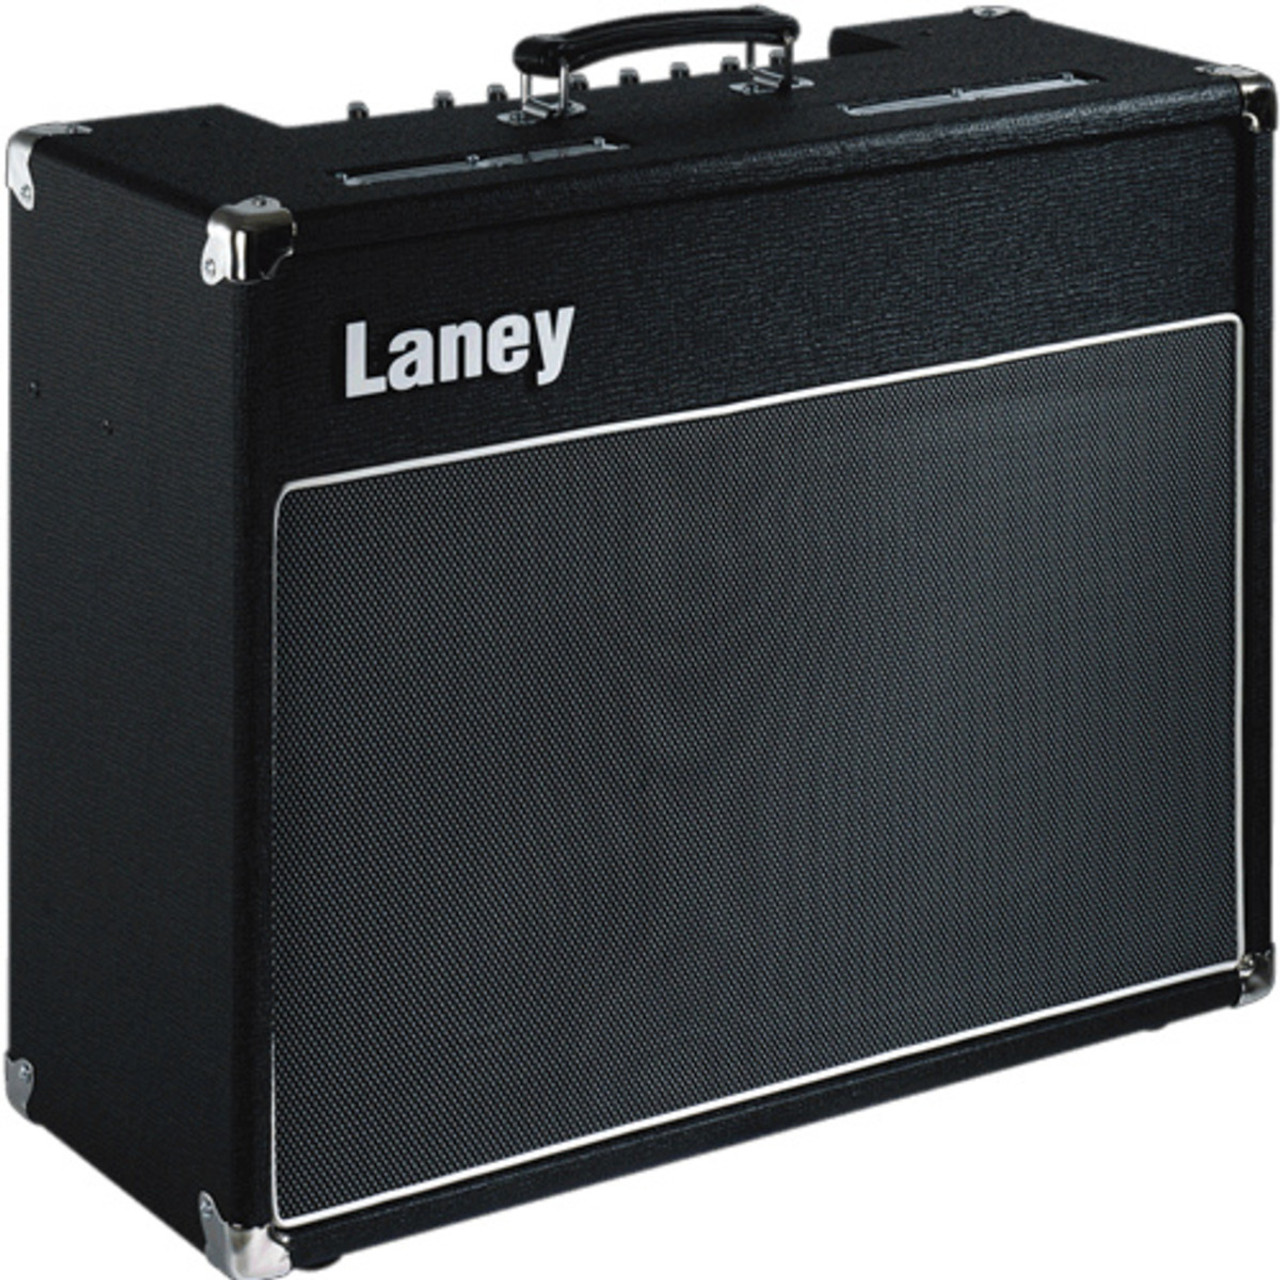 数量限定新品Laney VC-30 ギターアンプ コンボ コンボ